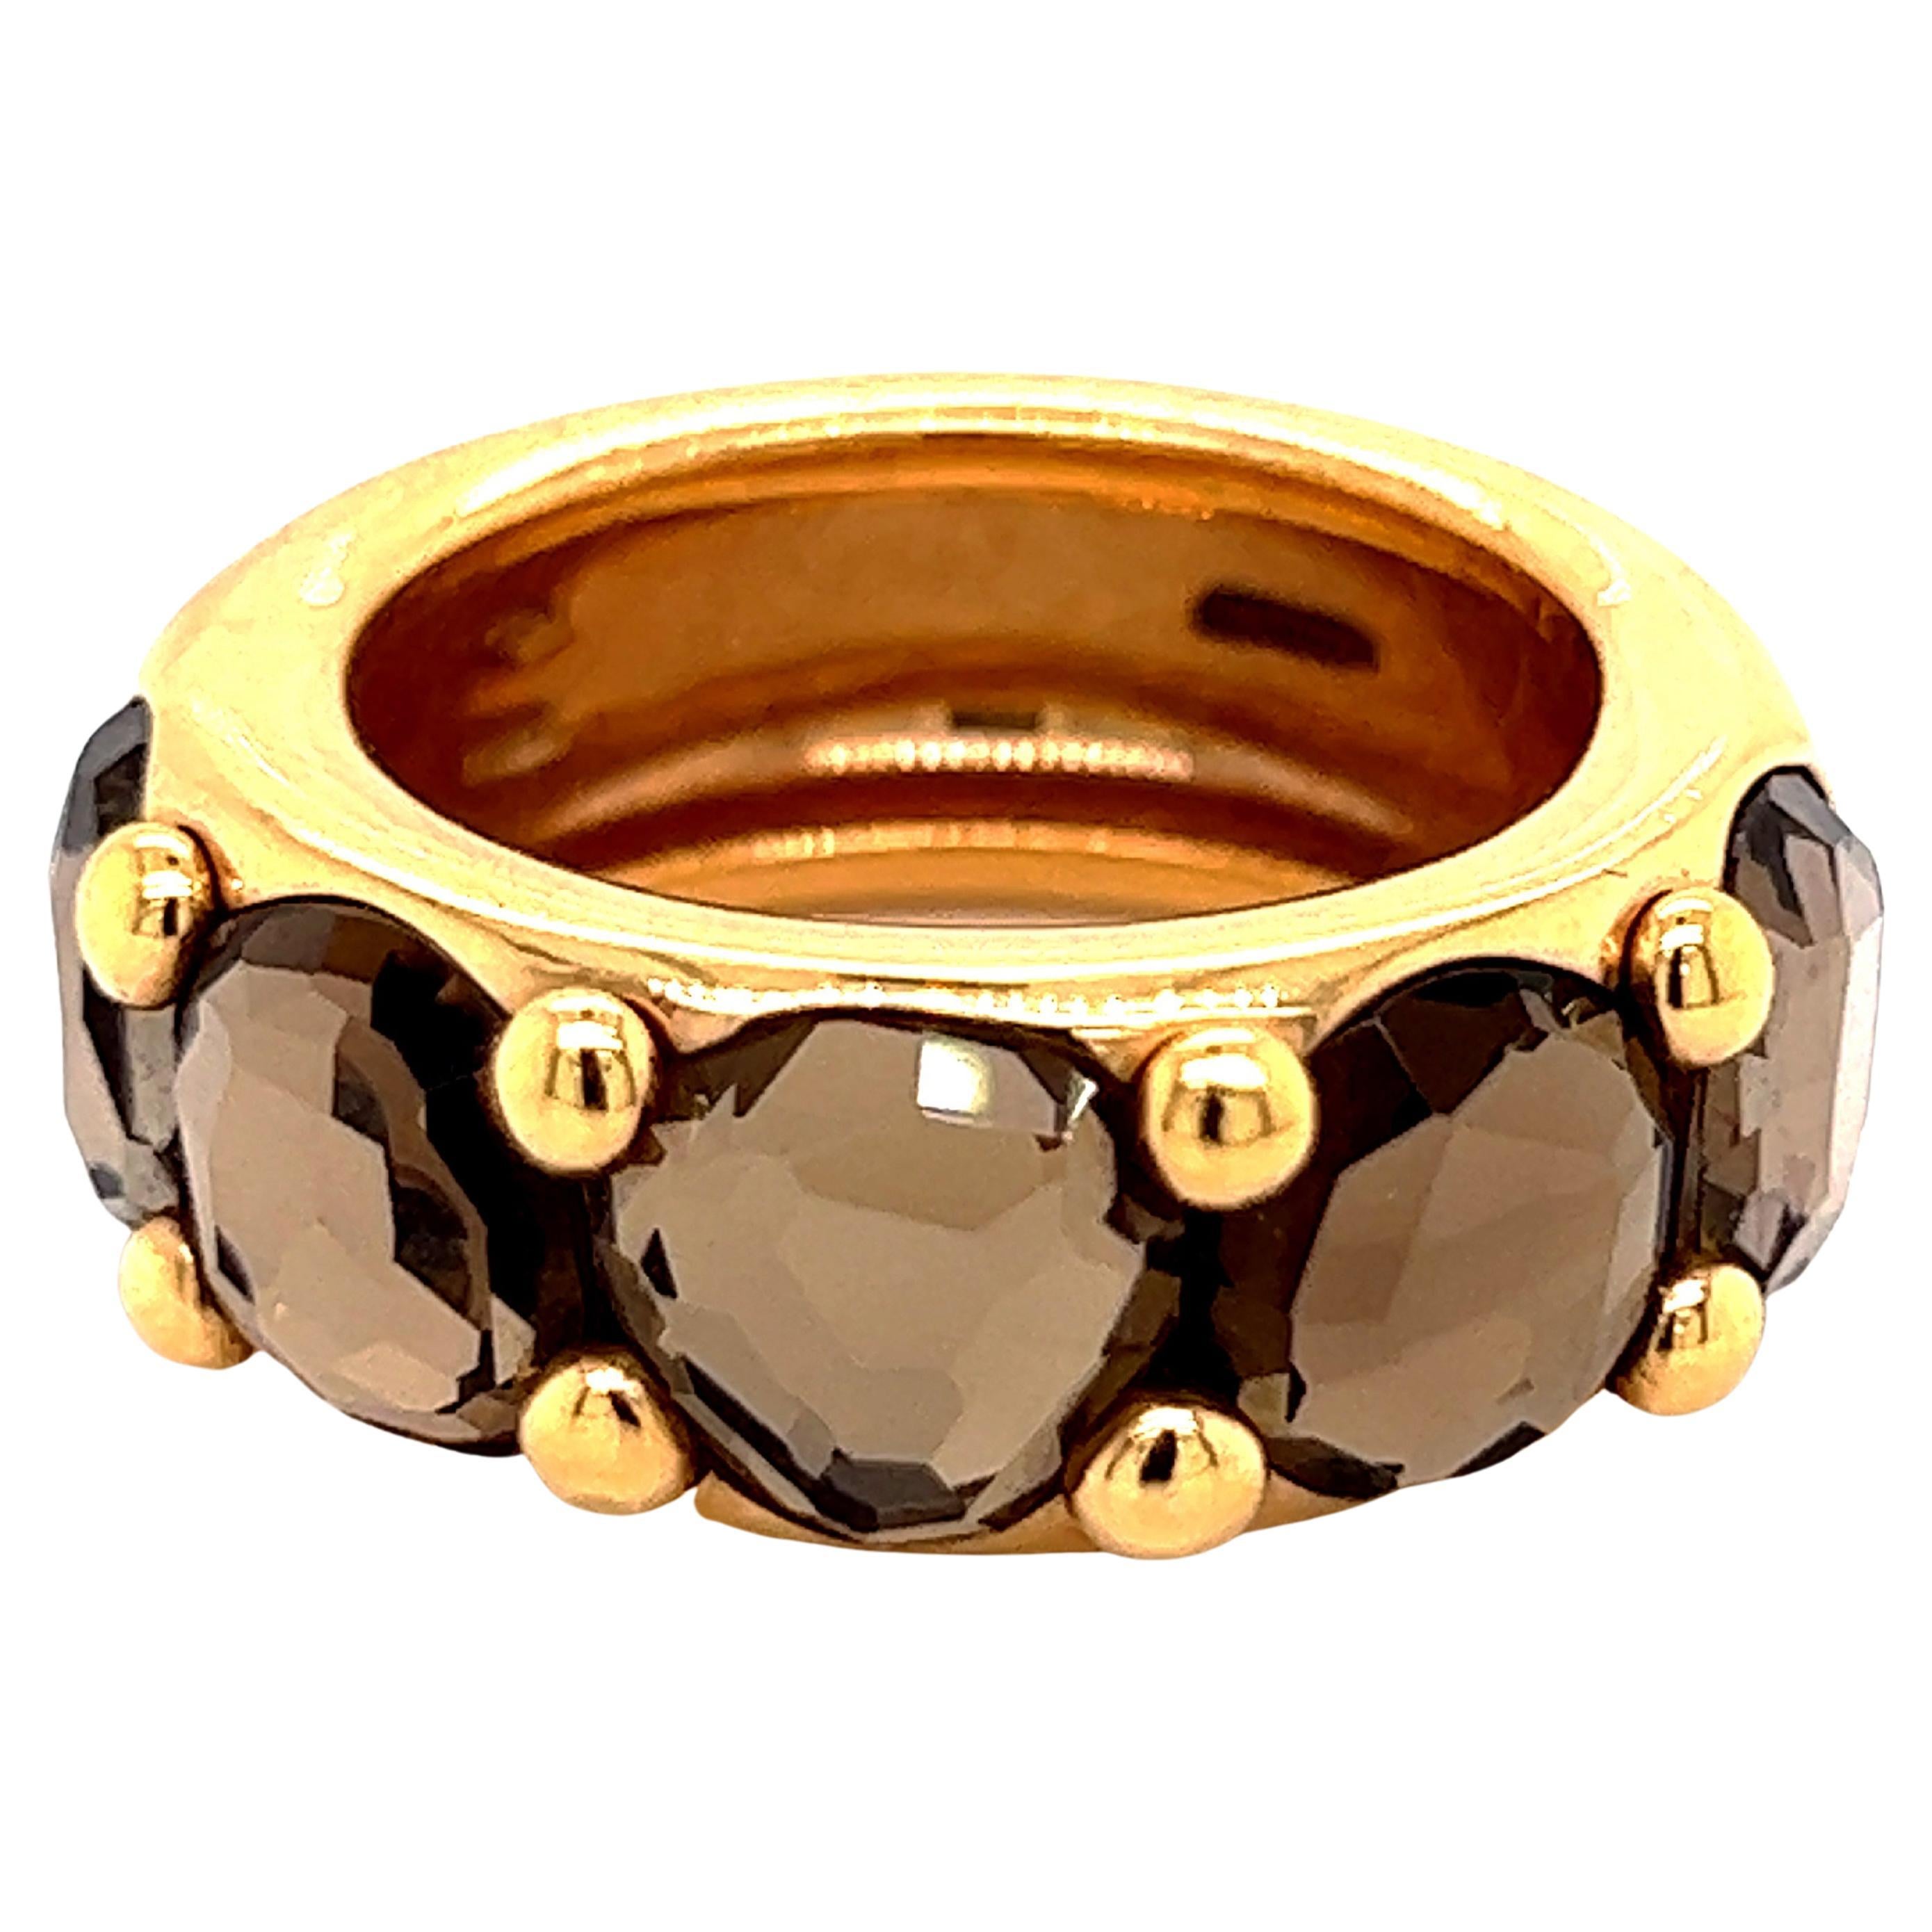 Original 2010 Iconic Pomellato Narciso Smoky Quartz Yellow Gold Ring For Sale